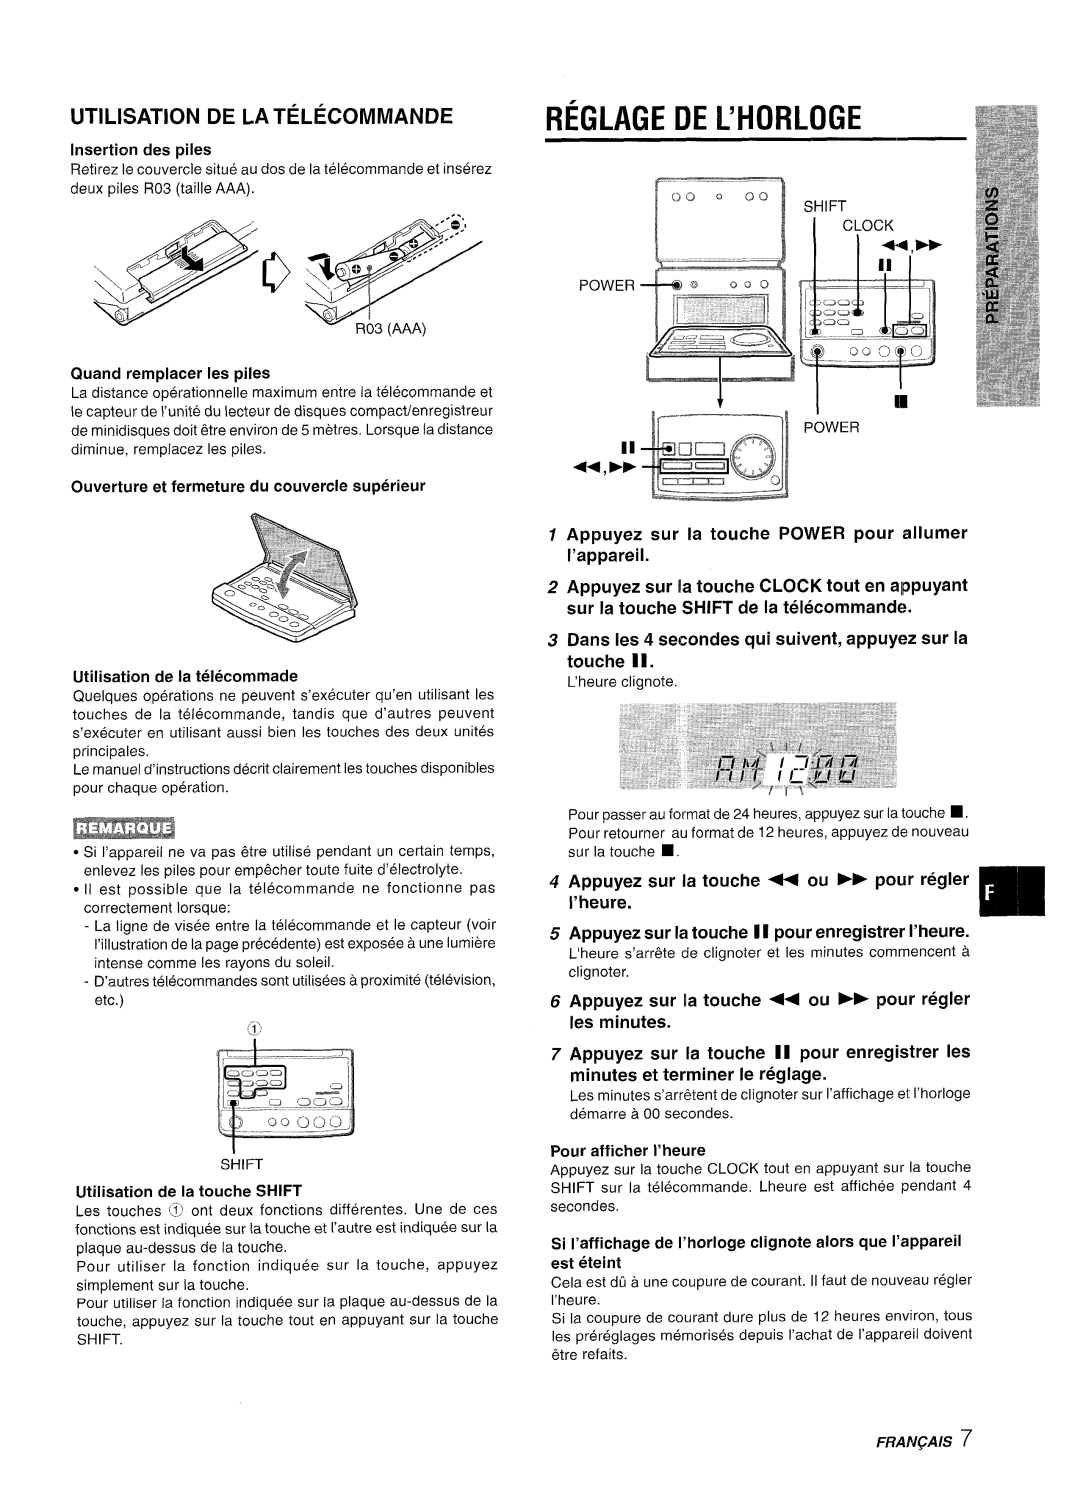 Aiwa XR-M70 manual Reglage De L’Horloge, UTILISATION DE LA TELkCOMMANDE, Appuyez sur la twche POWER pour allumer I’appareil 